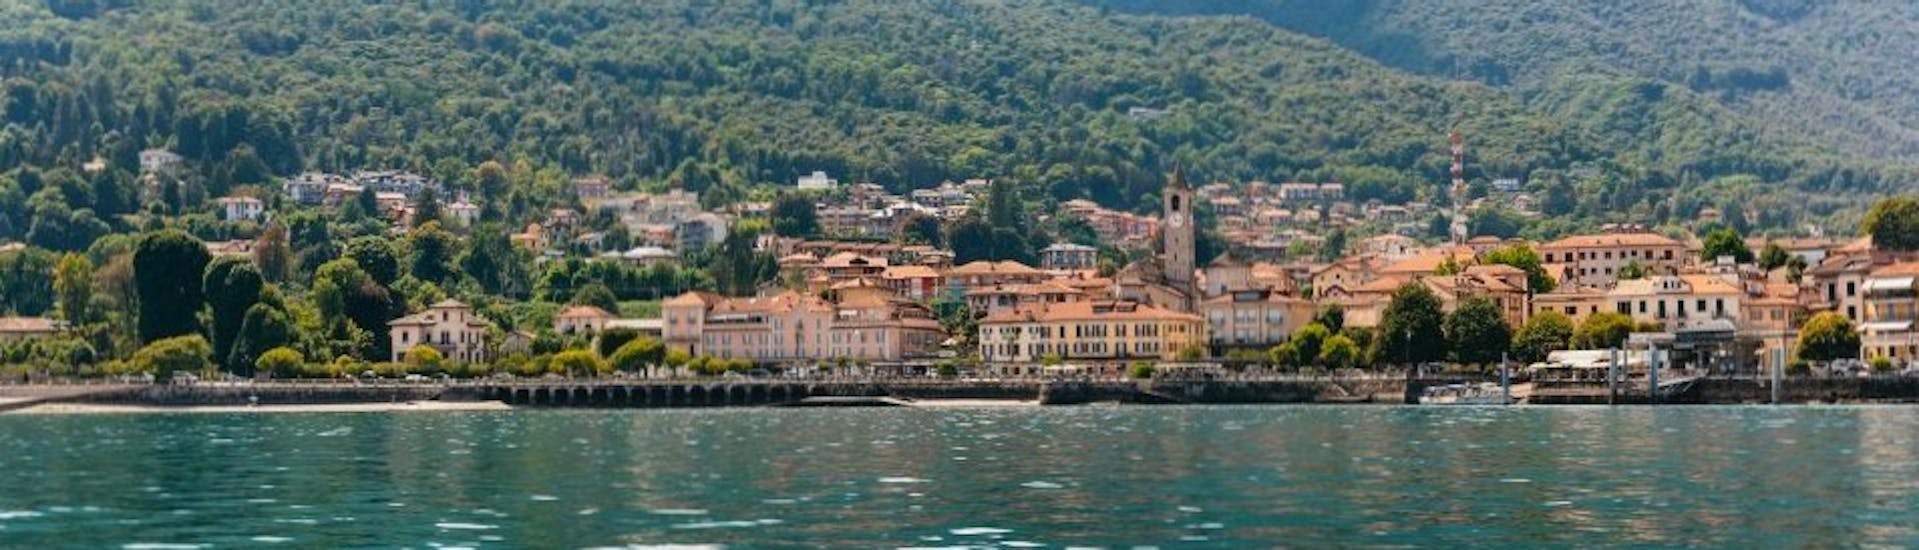 Boottocht van Stresa naar Isola Bella (Lake Maggiore) met toeristische attracties.